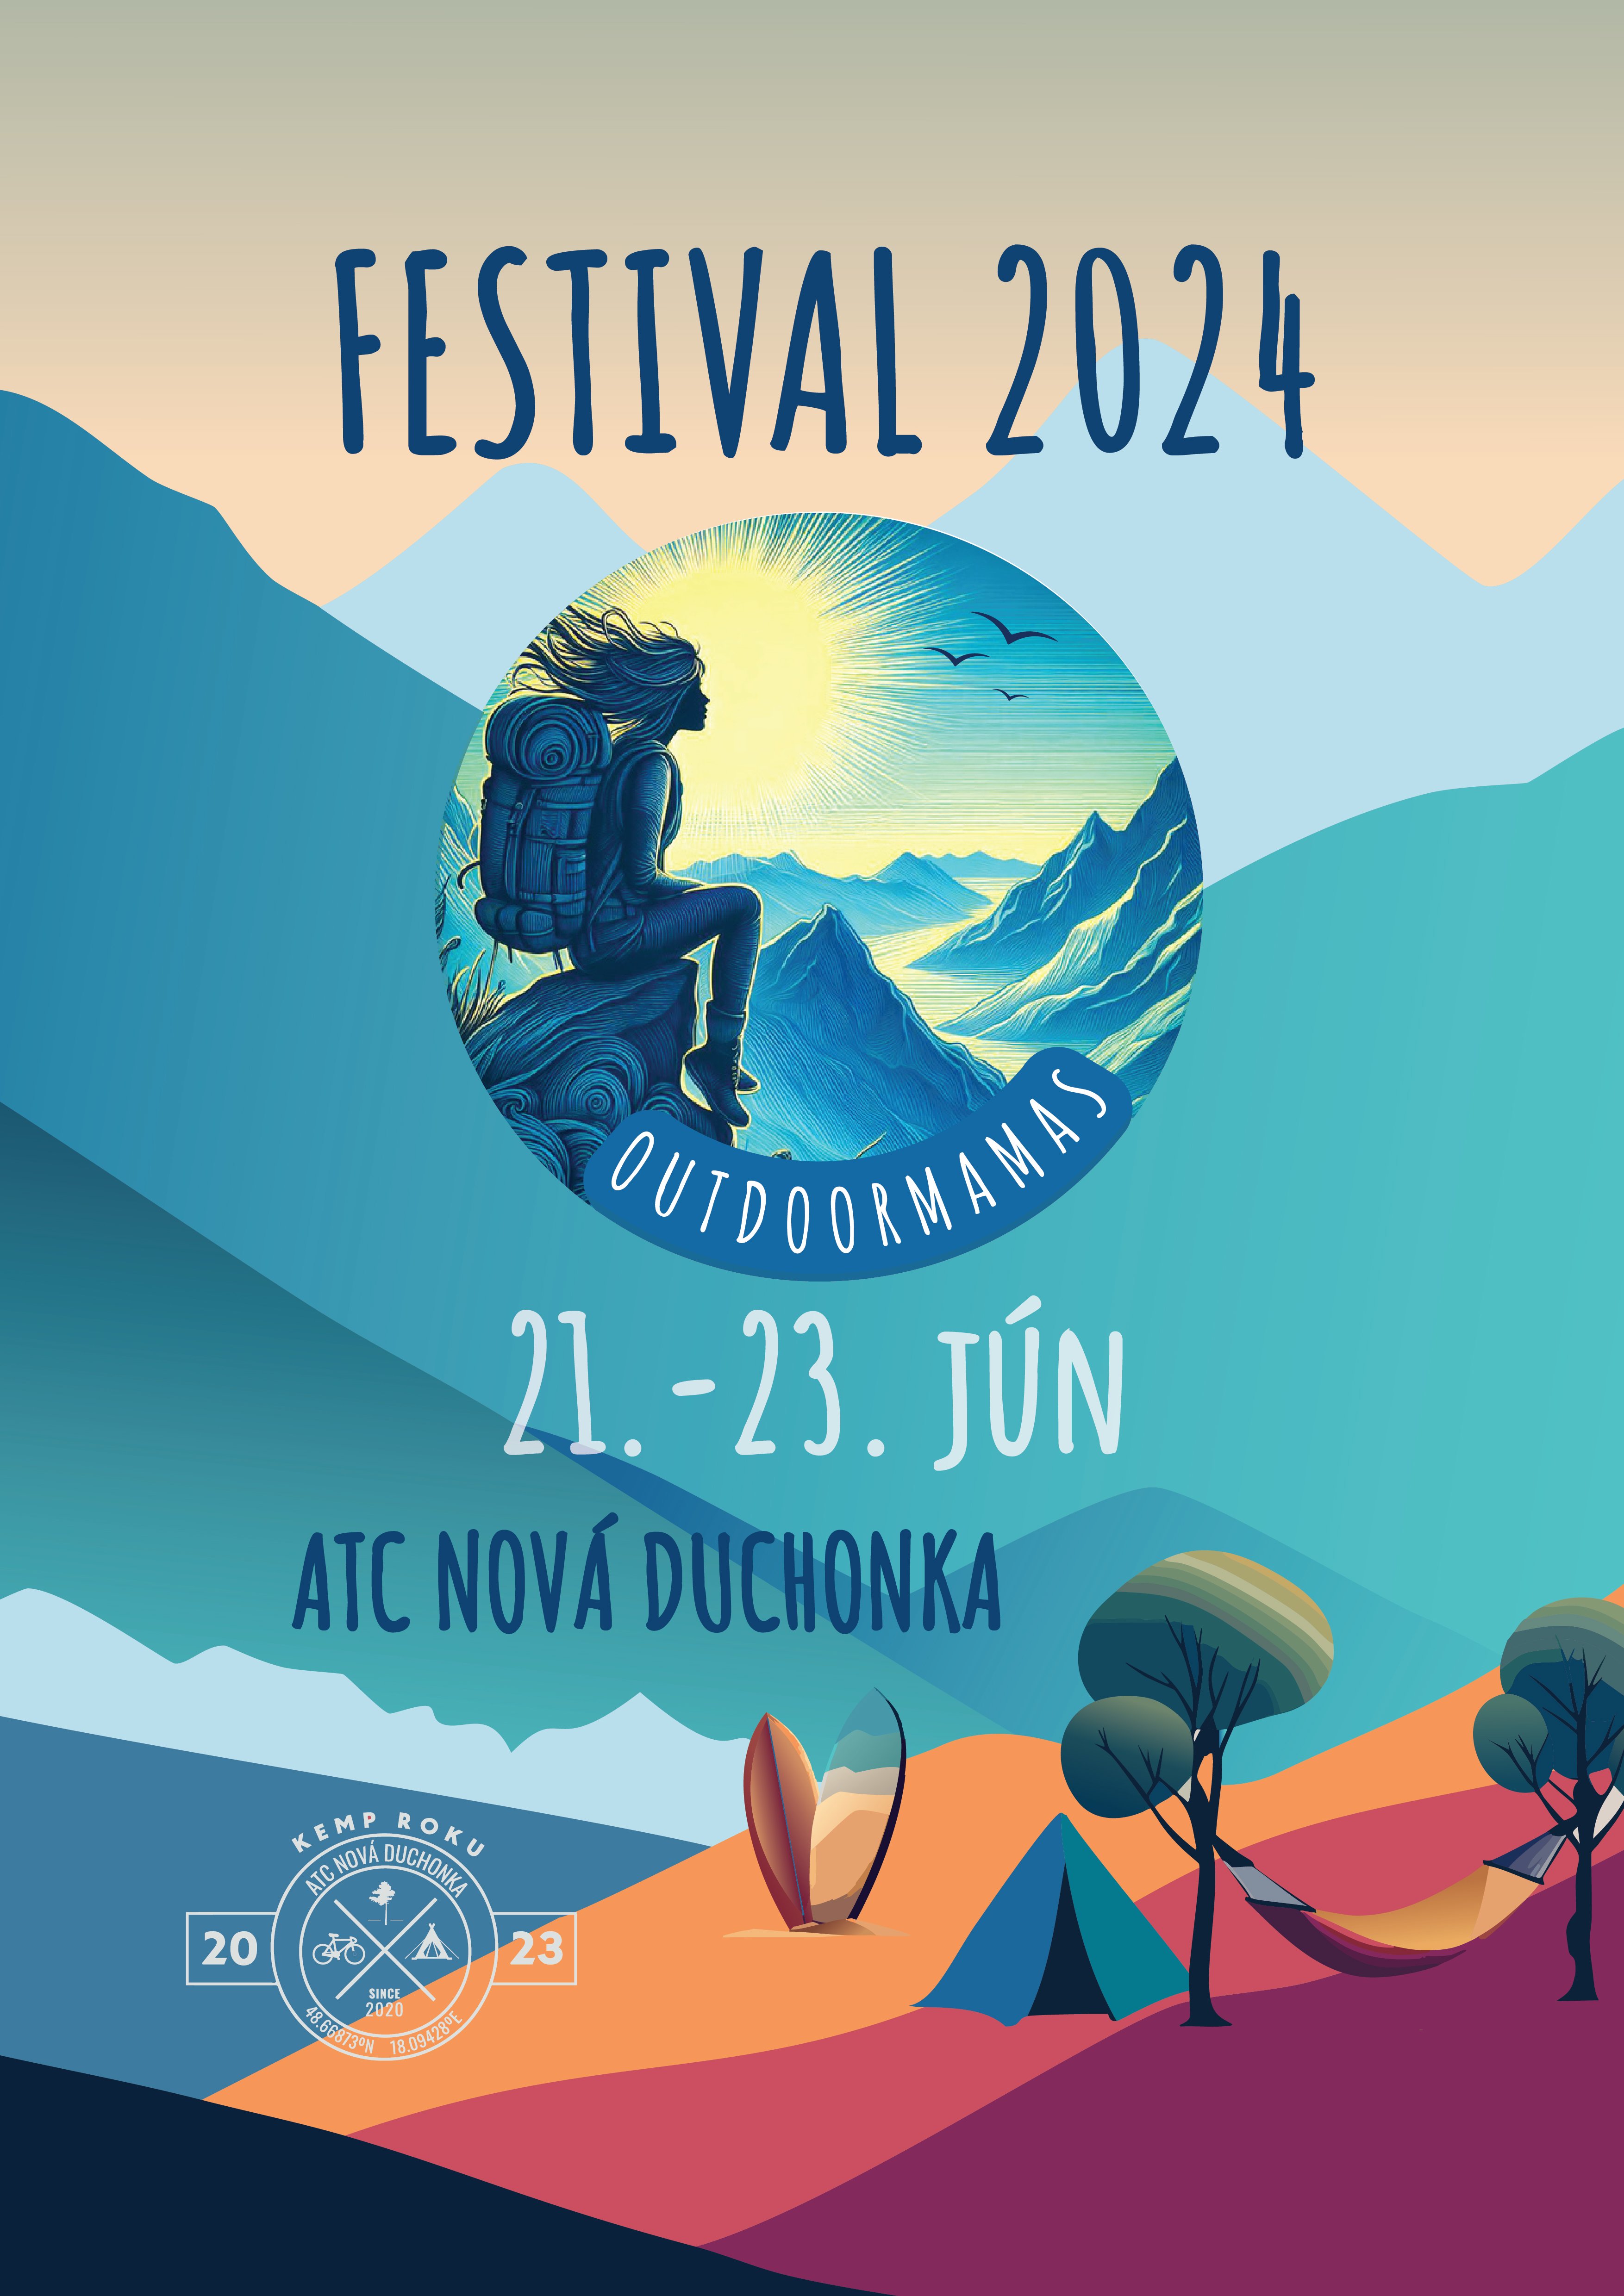 outdoormamas festival 2024 nova duchonka kemp kempovacka rodinny rodina opekacka decathlon